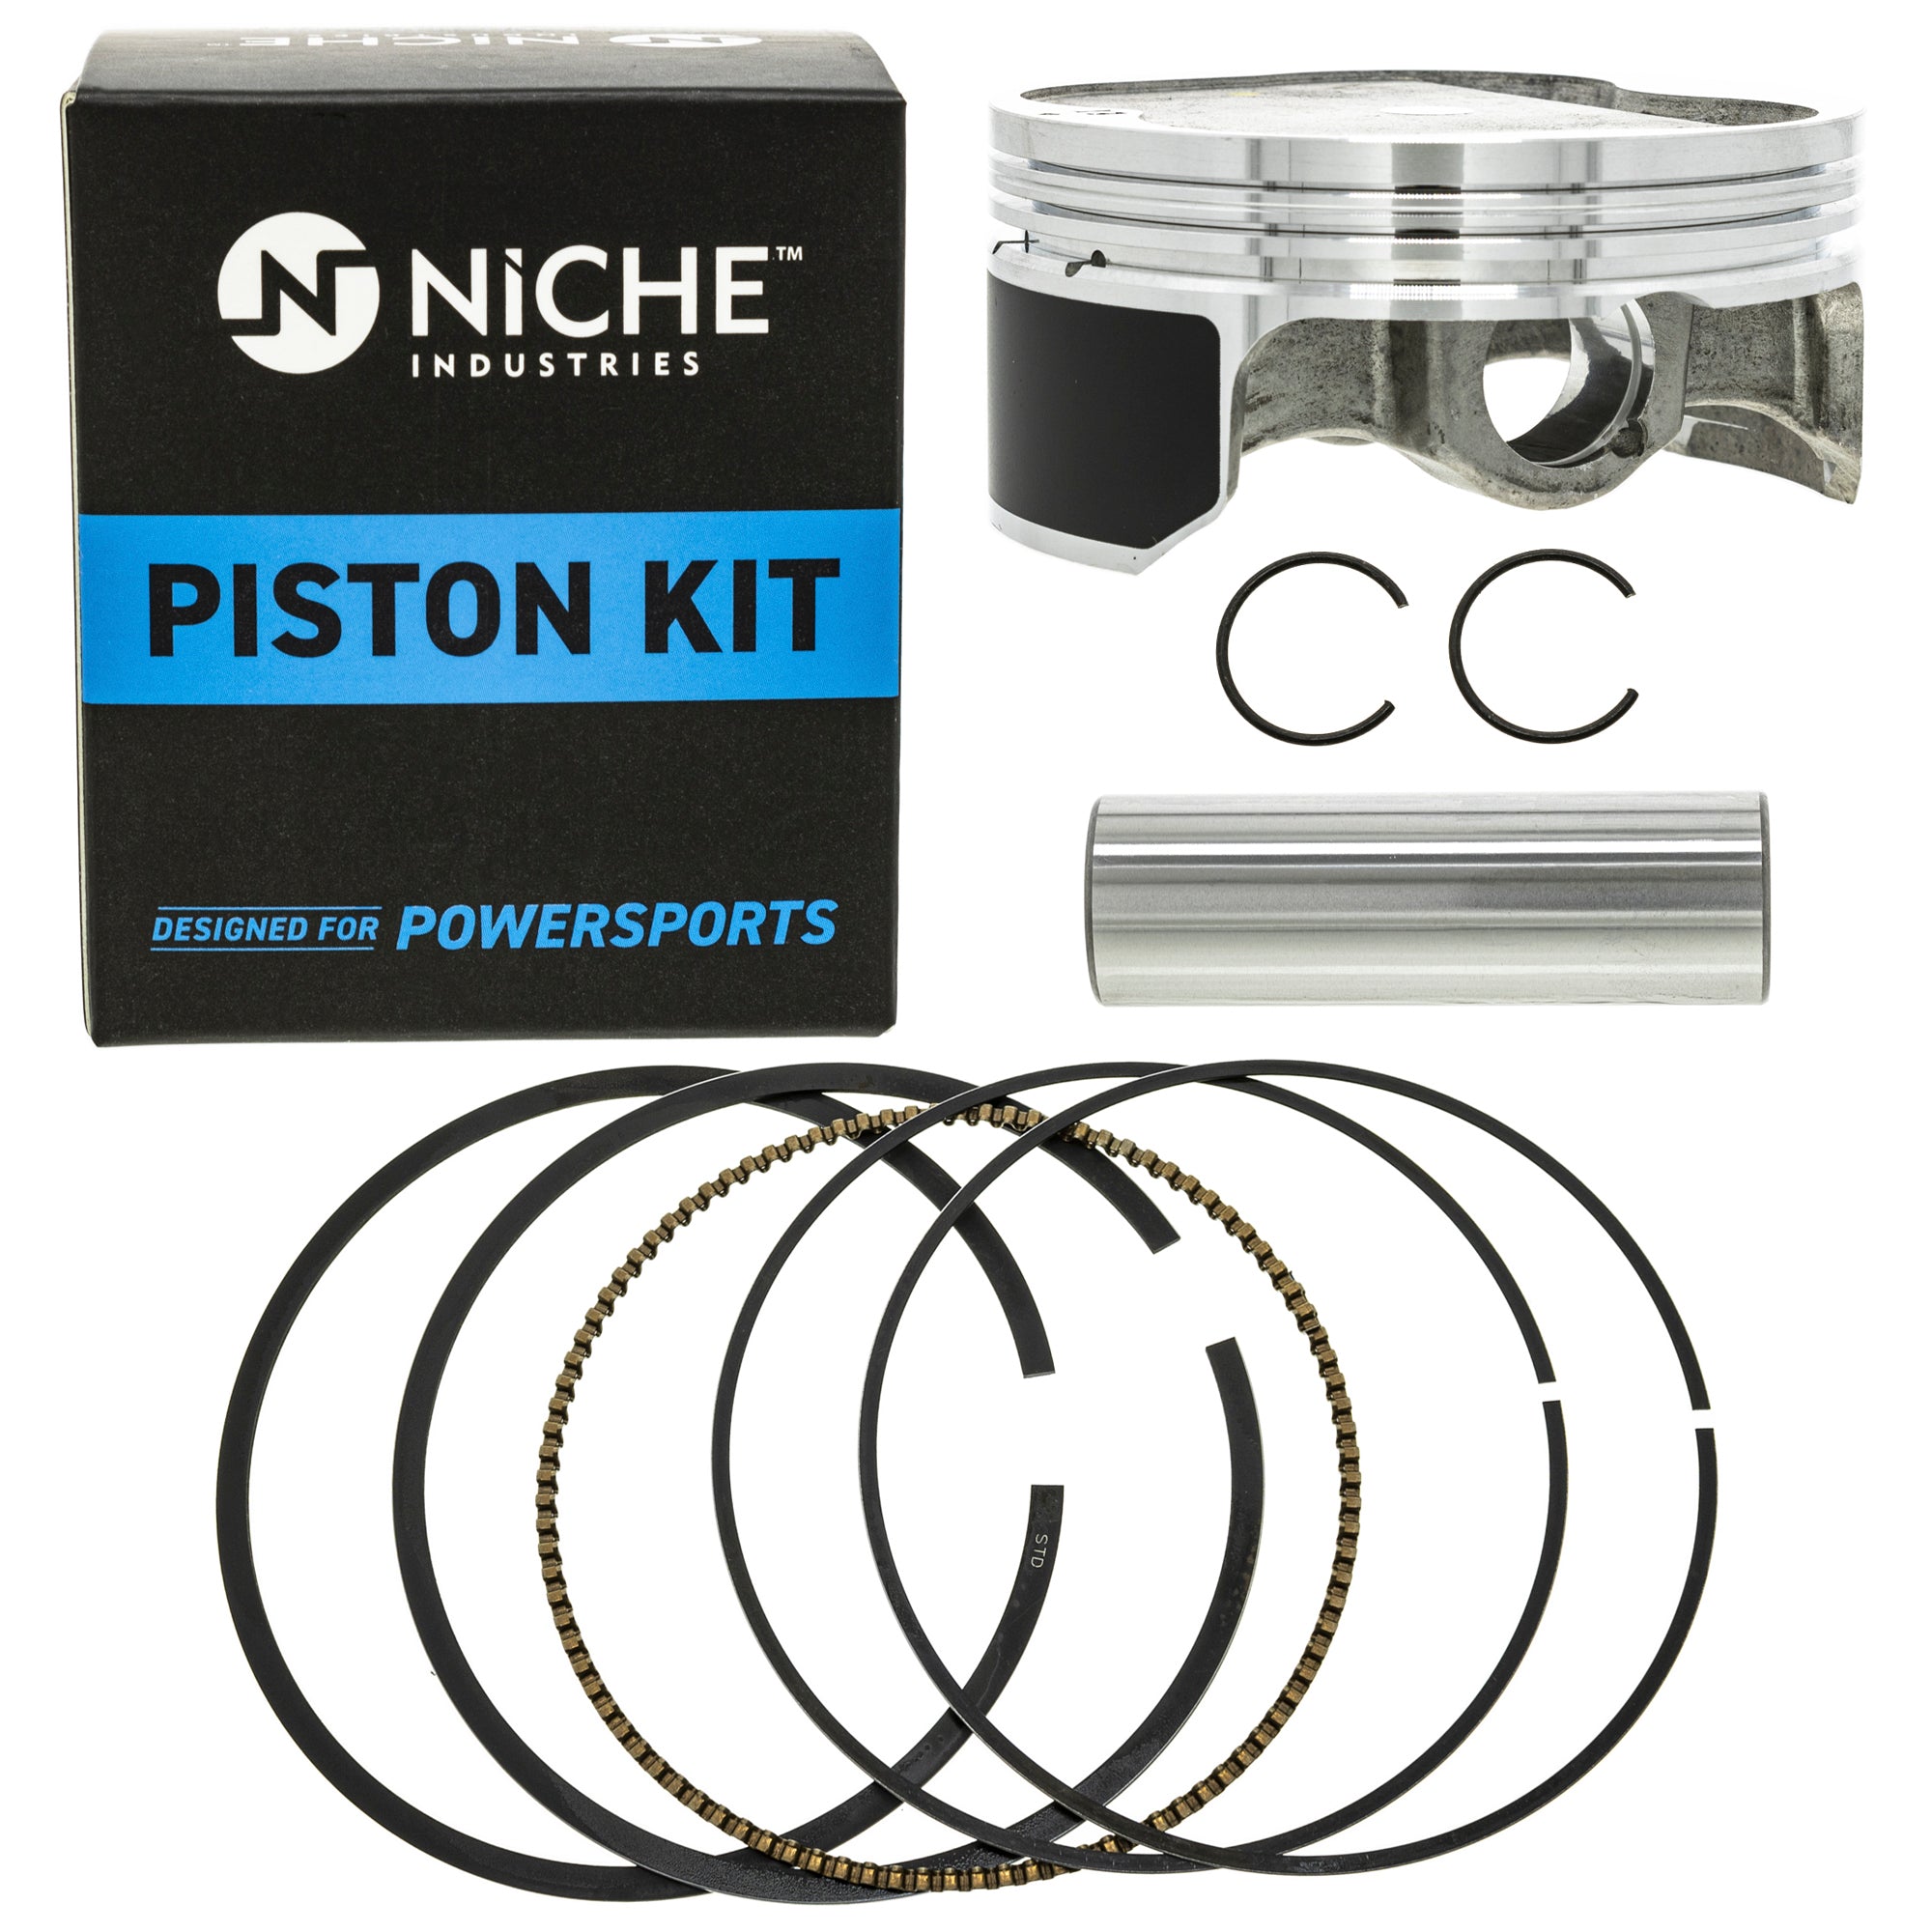 NICHE MK1001152 Piston Kit